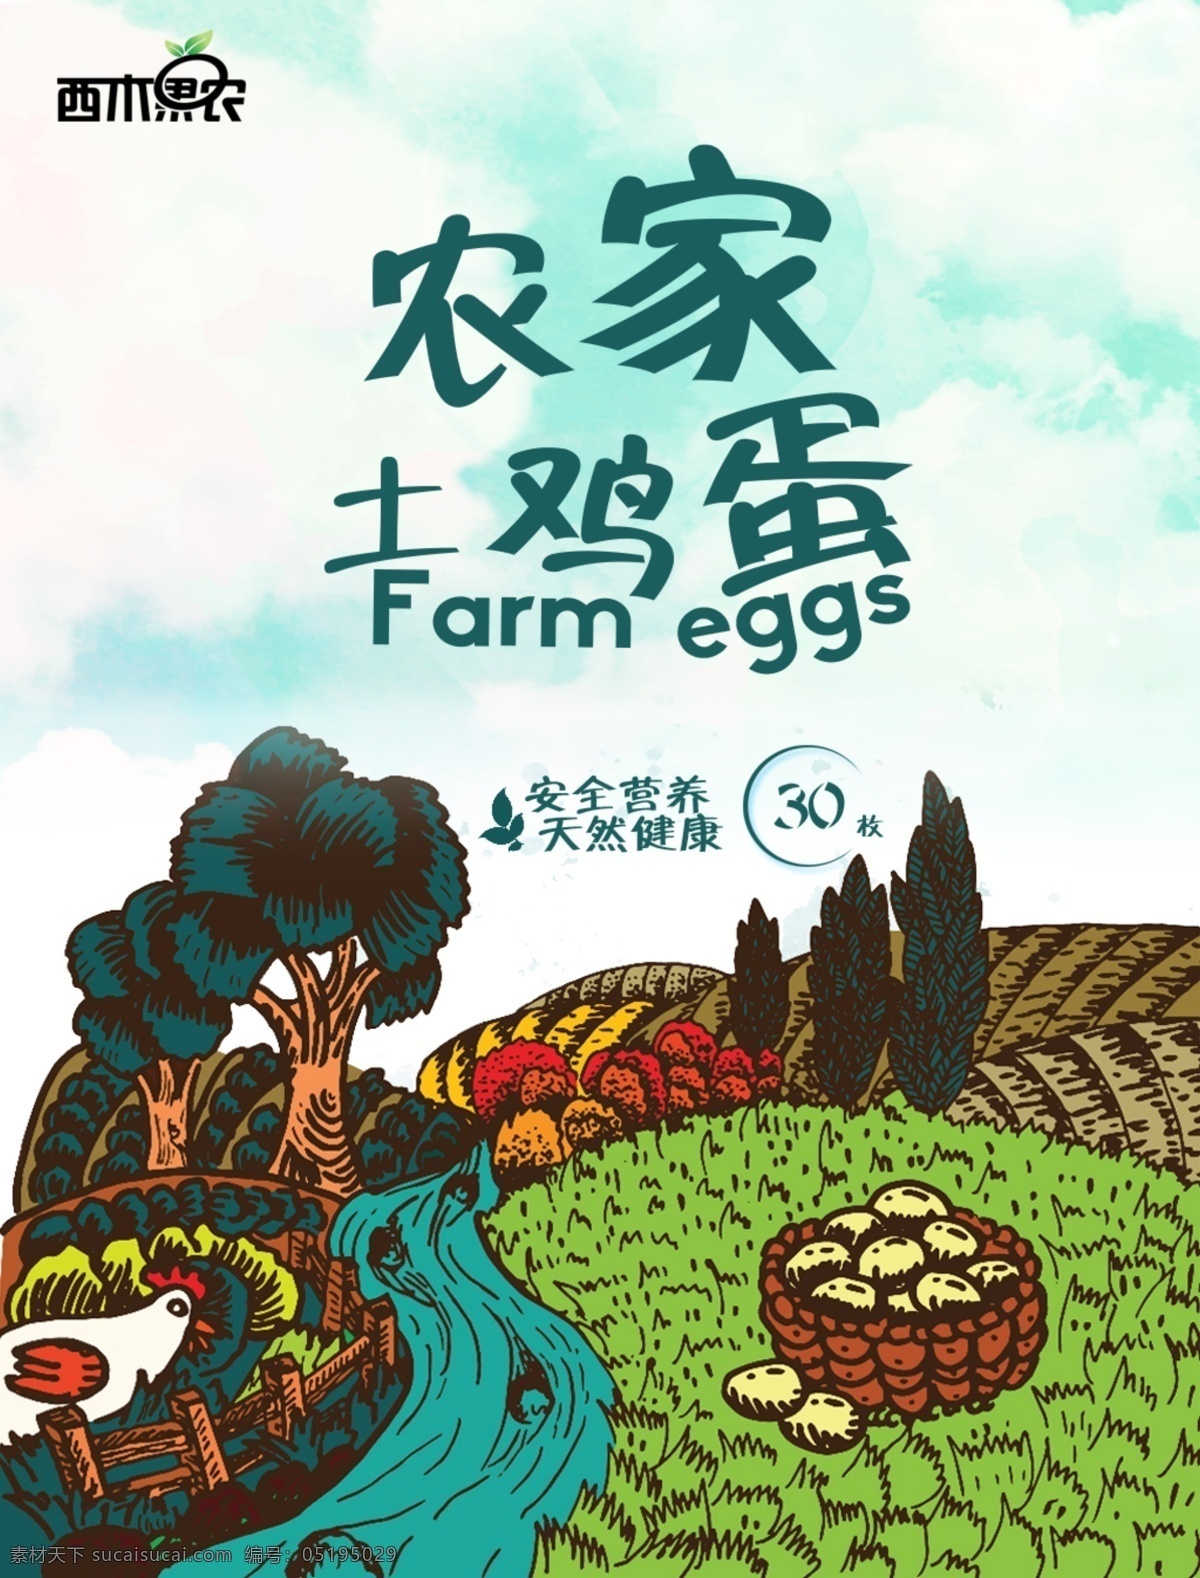 农家 土 鸡蛋 插画 海报 土鸡蛋 鸡蛋插画 鸡插画 农庄插画 手绘 营养 天然 健康